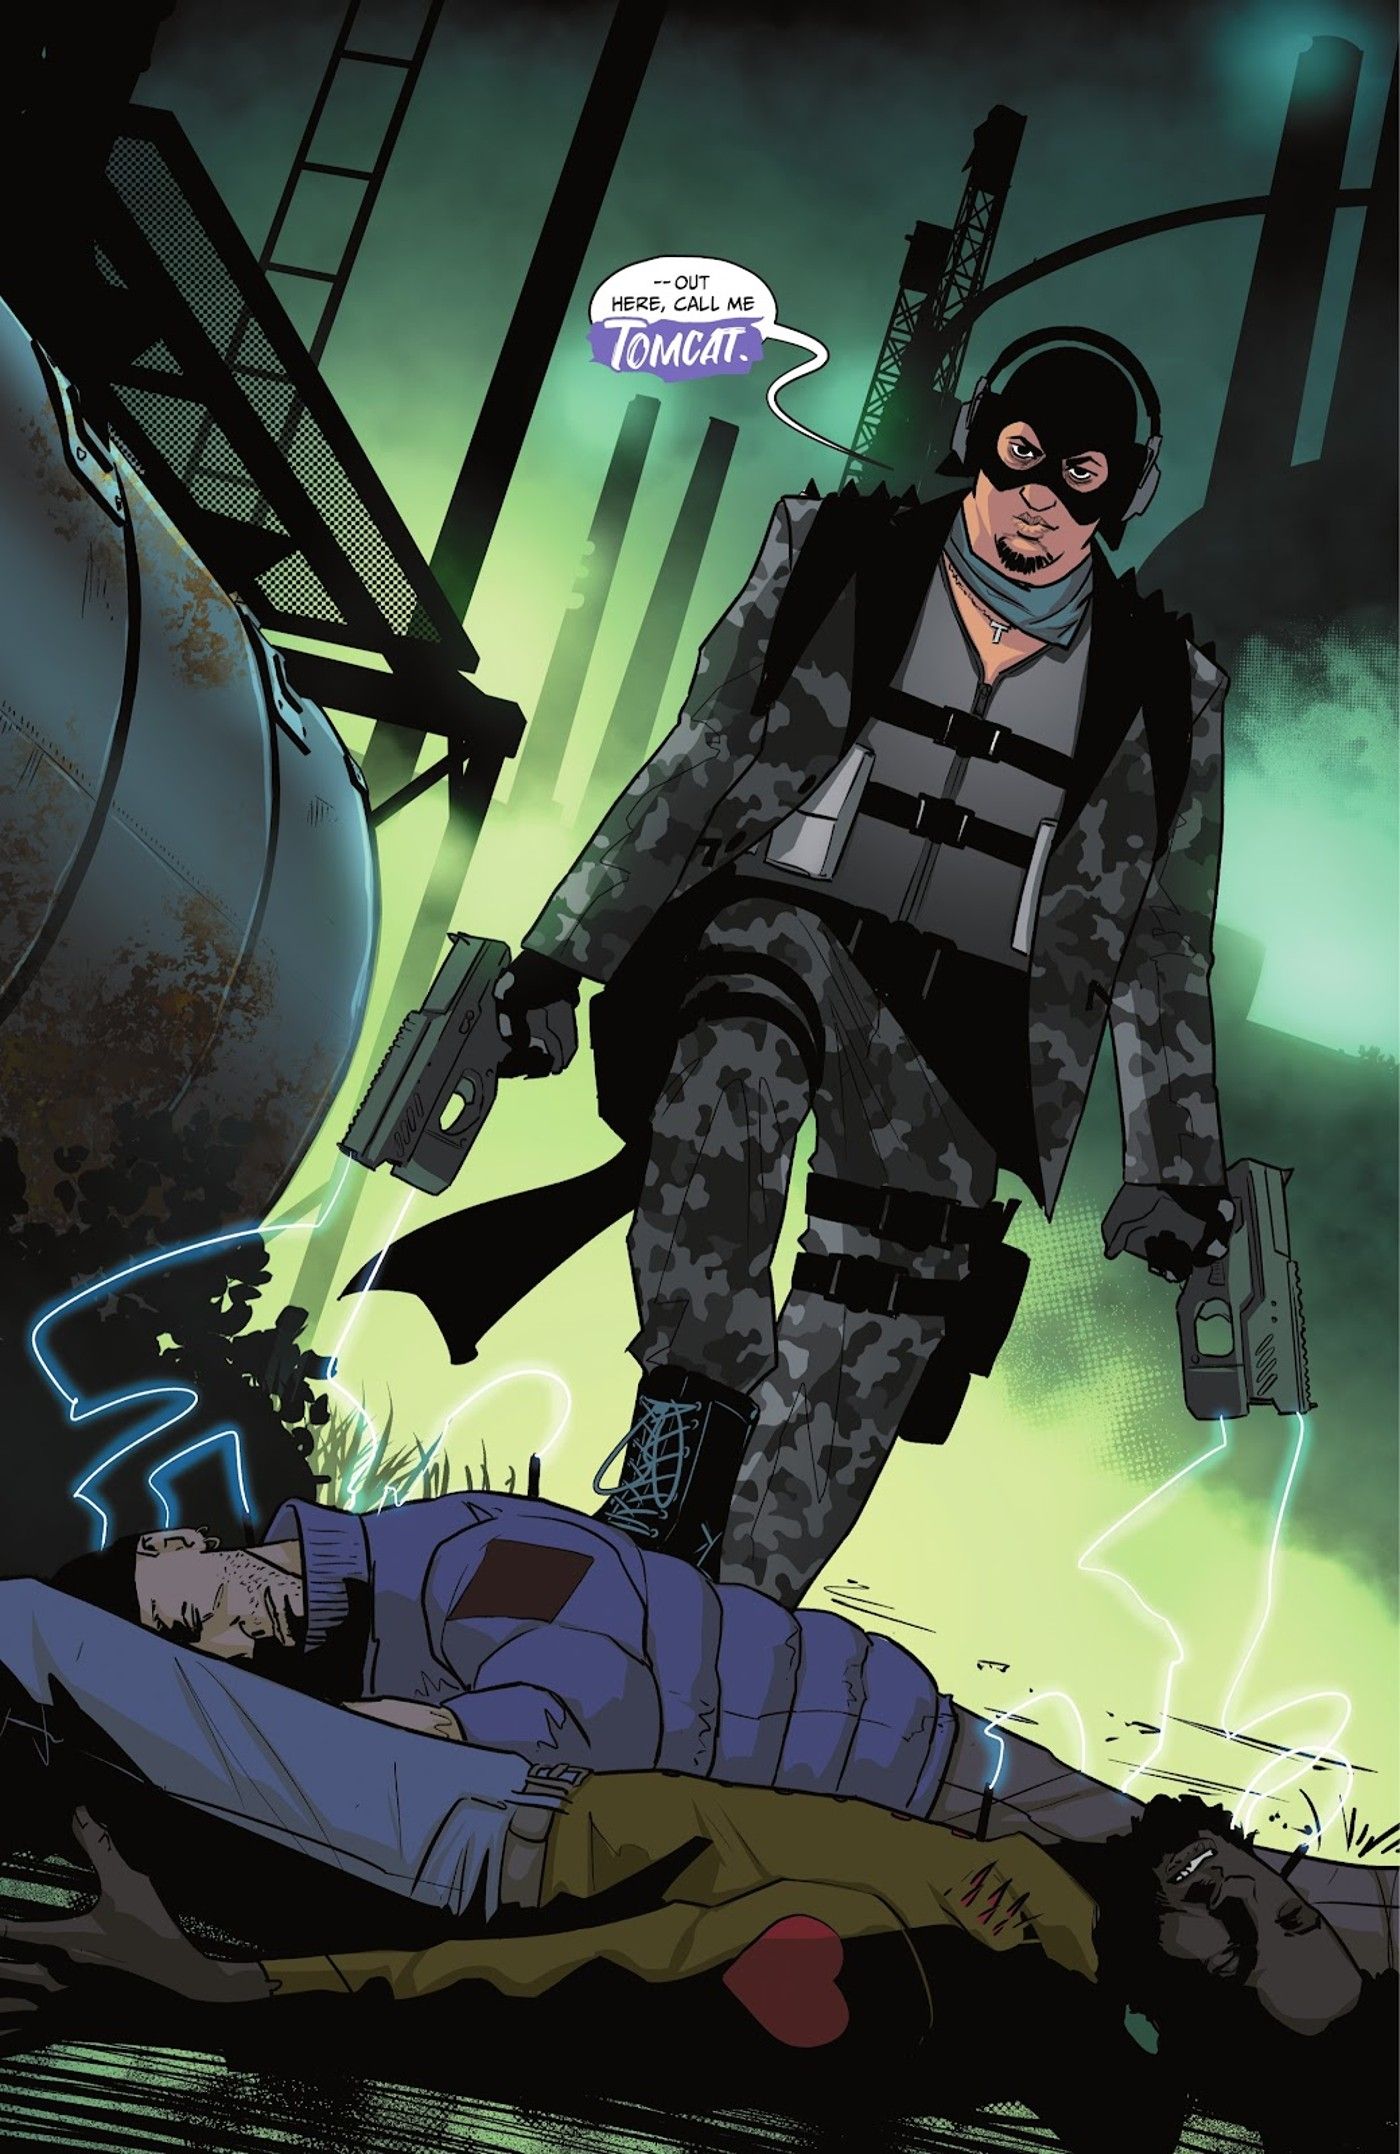 Catwoman's bondgenoot Dario in camouflage en masker verschijnt als kater